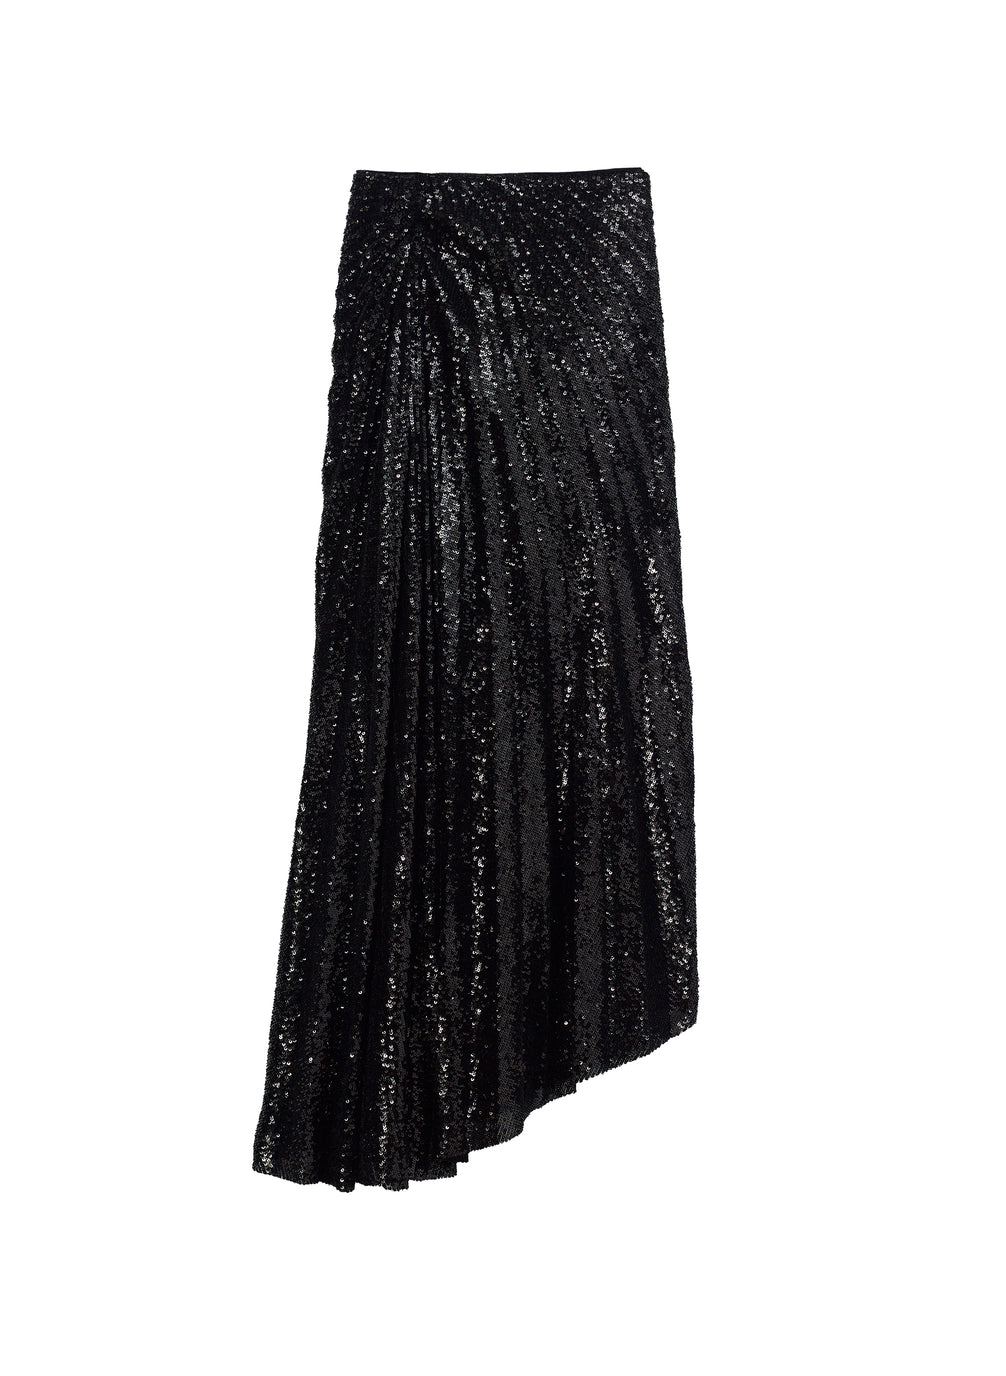 flatlay of black sequined midi skirt